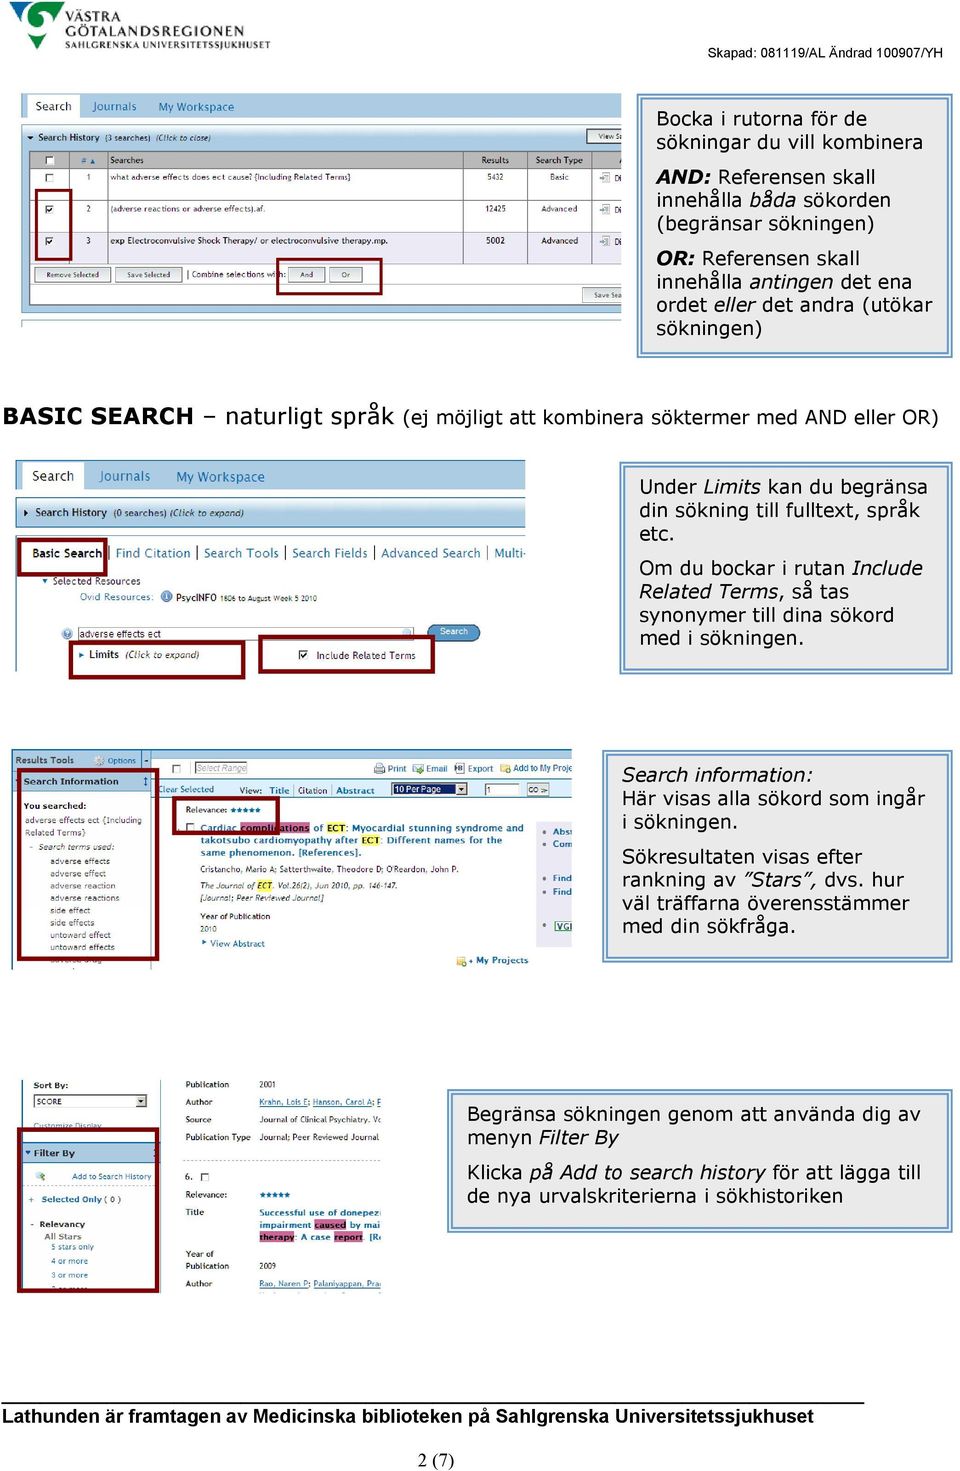 Om du bockar i rutan Include Related Terms, så tas synonymer till dina sökord med i sökningen. Search information: Här visas alla sökord som ingår i sökningen.